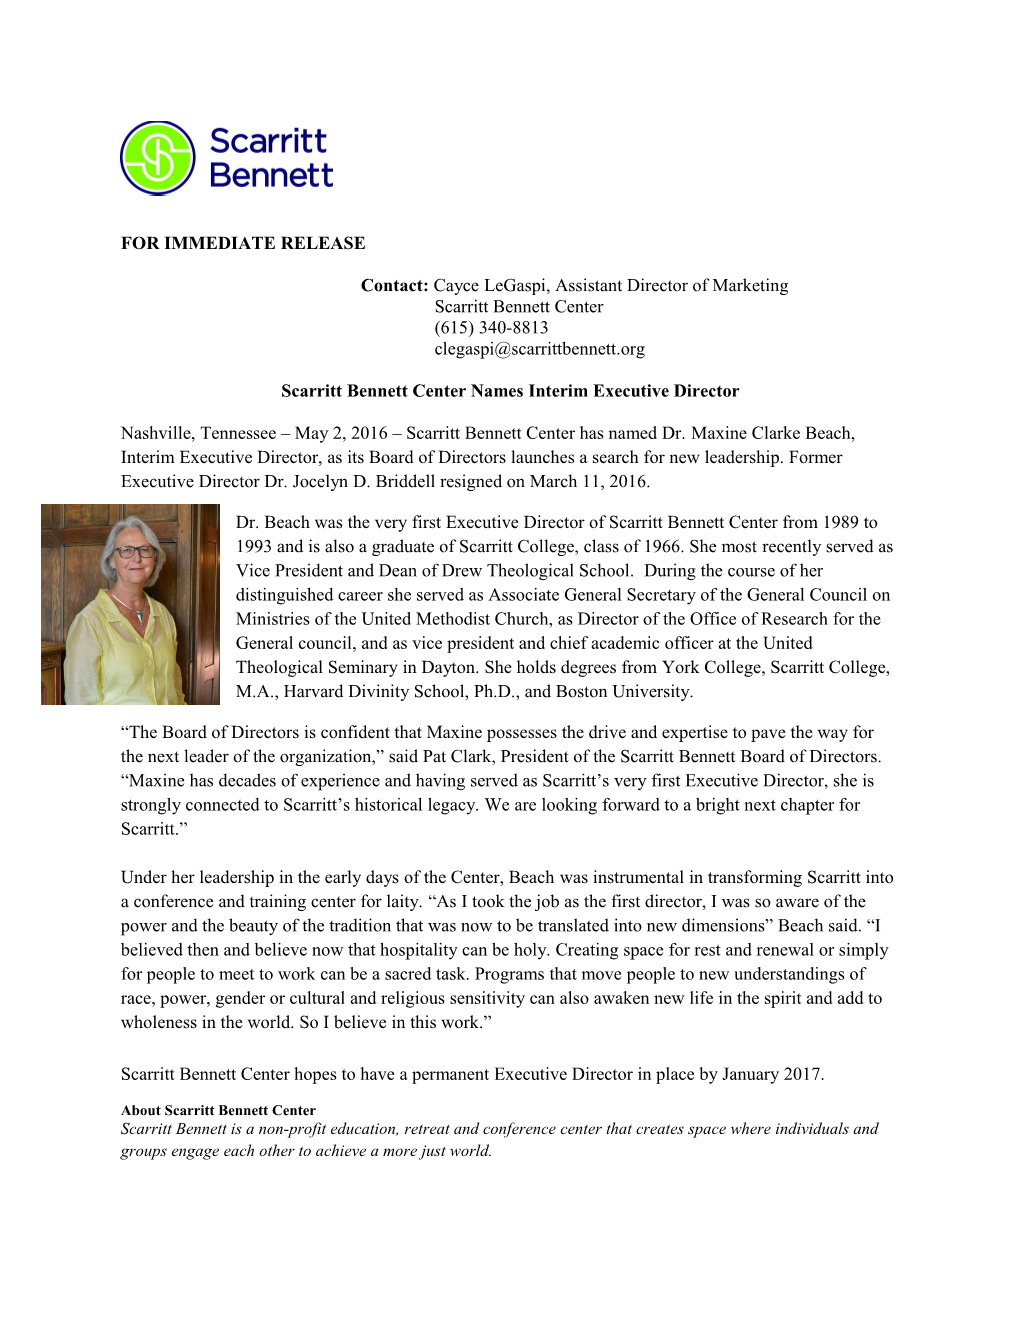 Scarritt Bennett Center Names Interim Executive Director